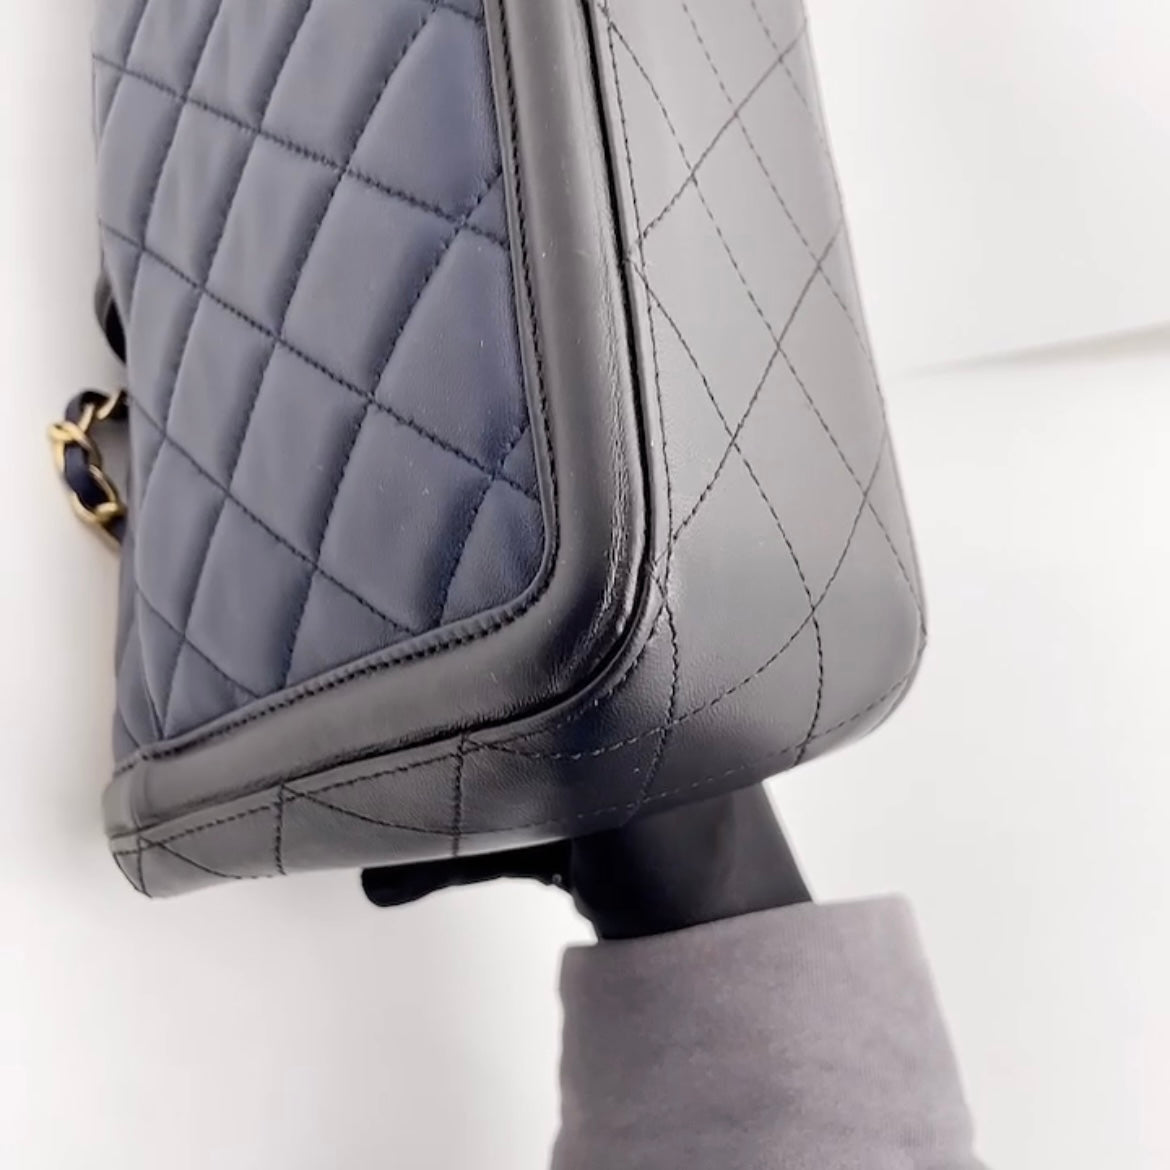 Preloved Chanel Elegant CC Flap Bag Large